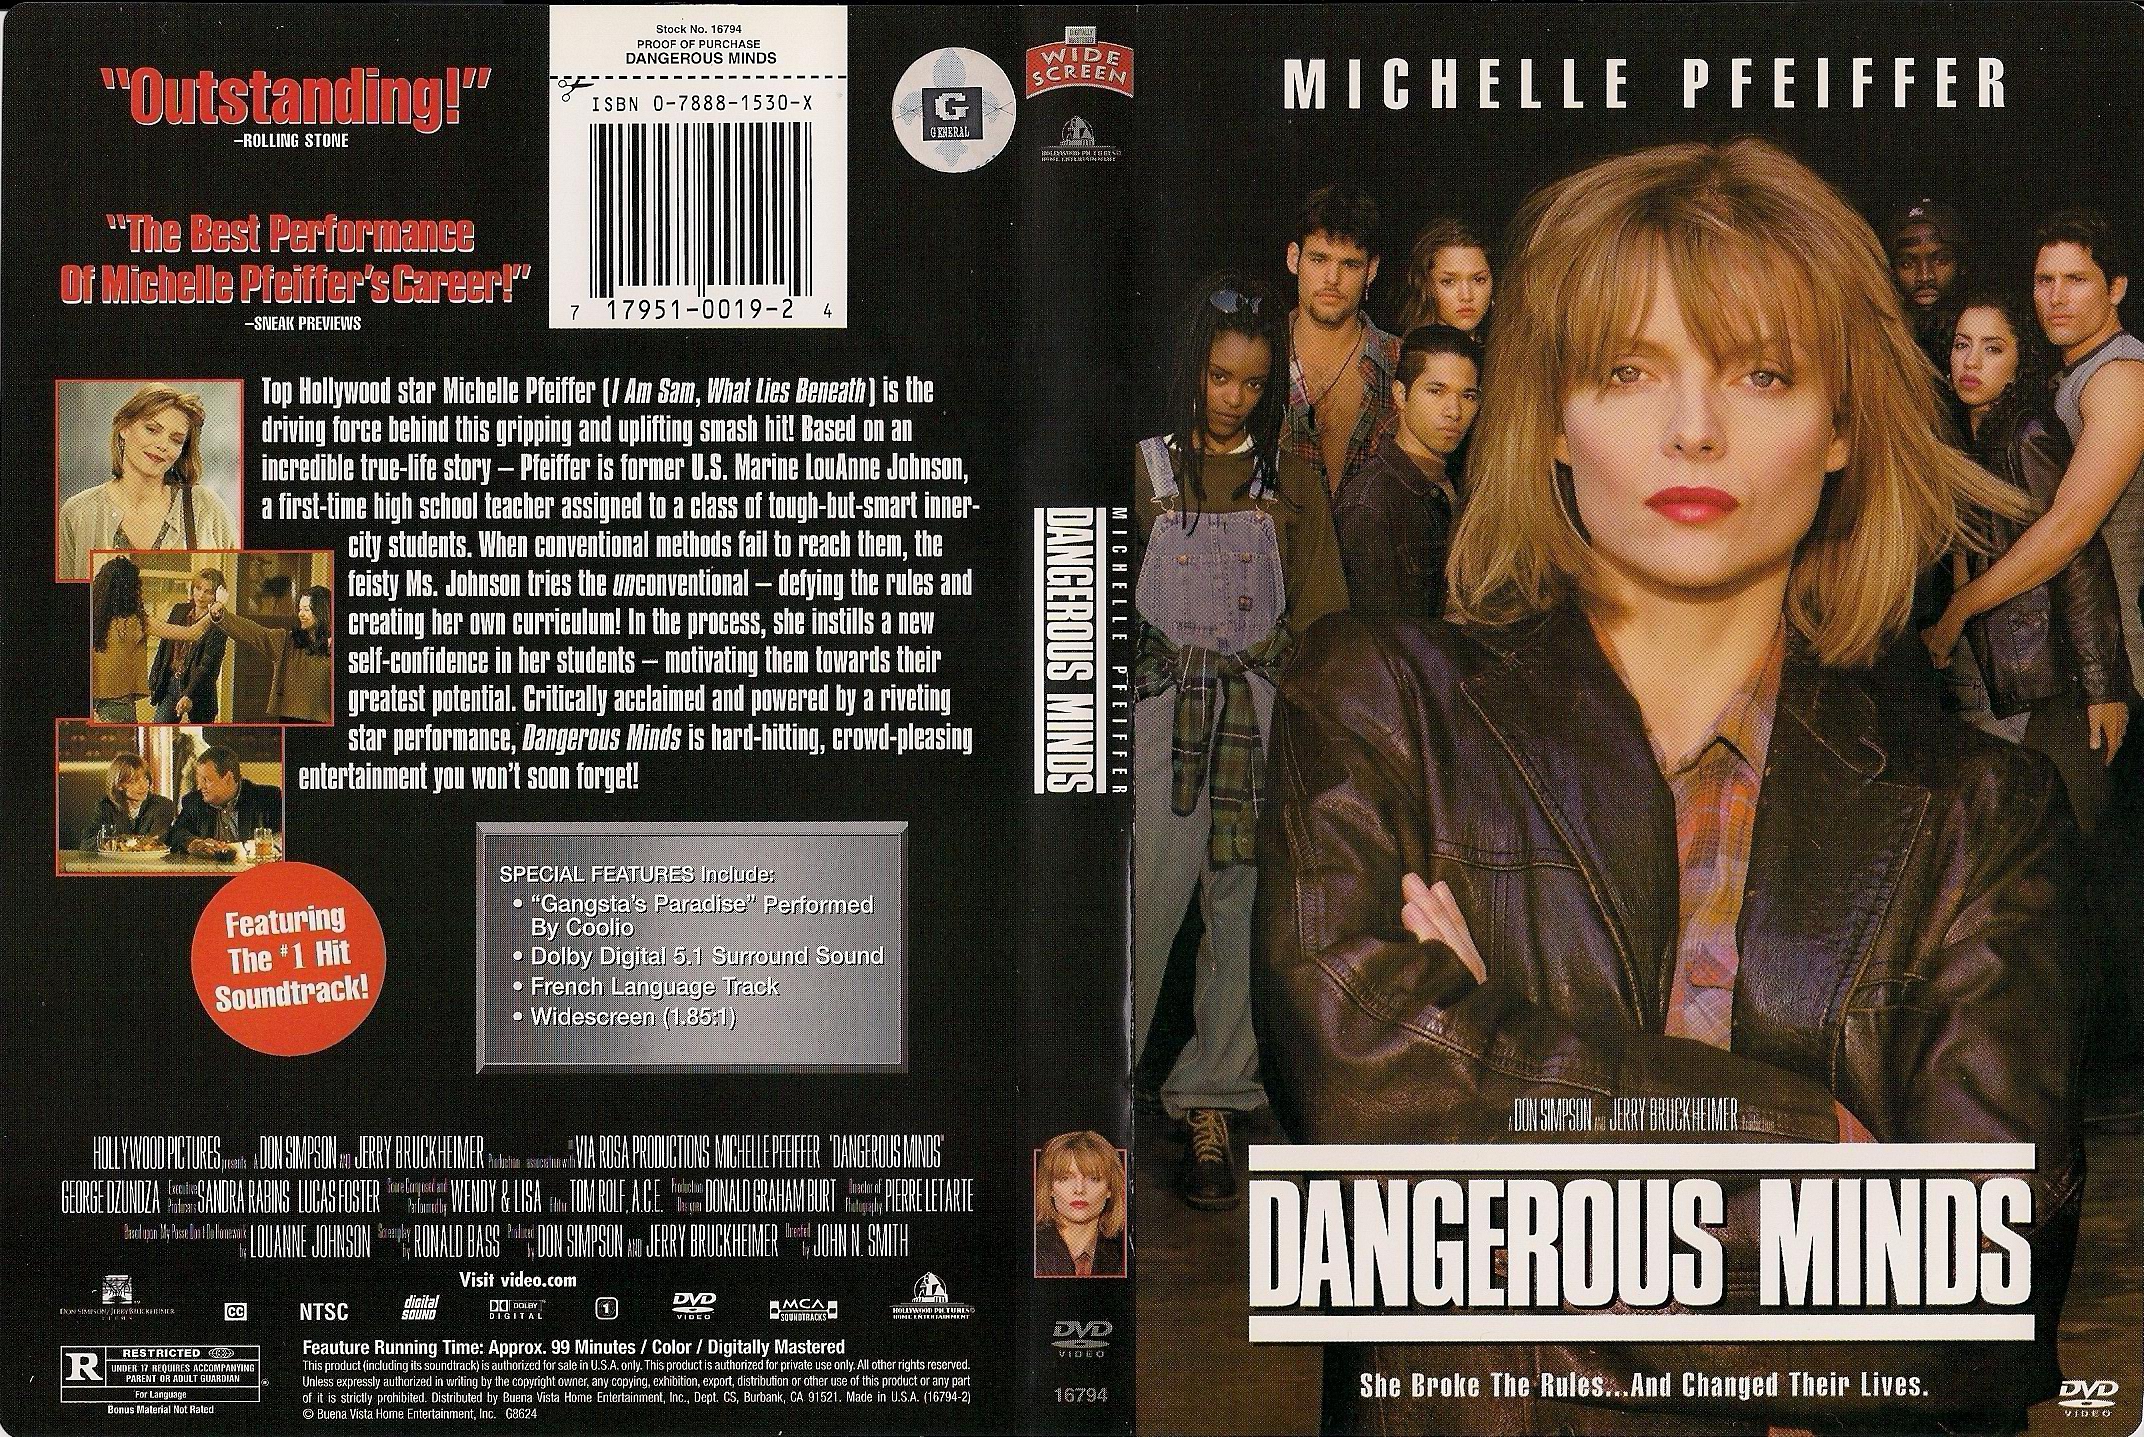 Jaquette DVD Dangerous minds (Canadienne)